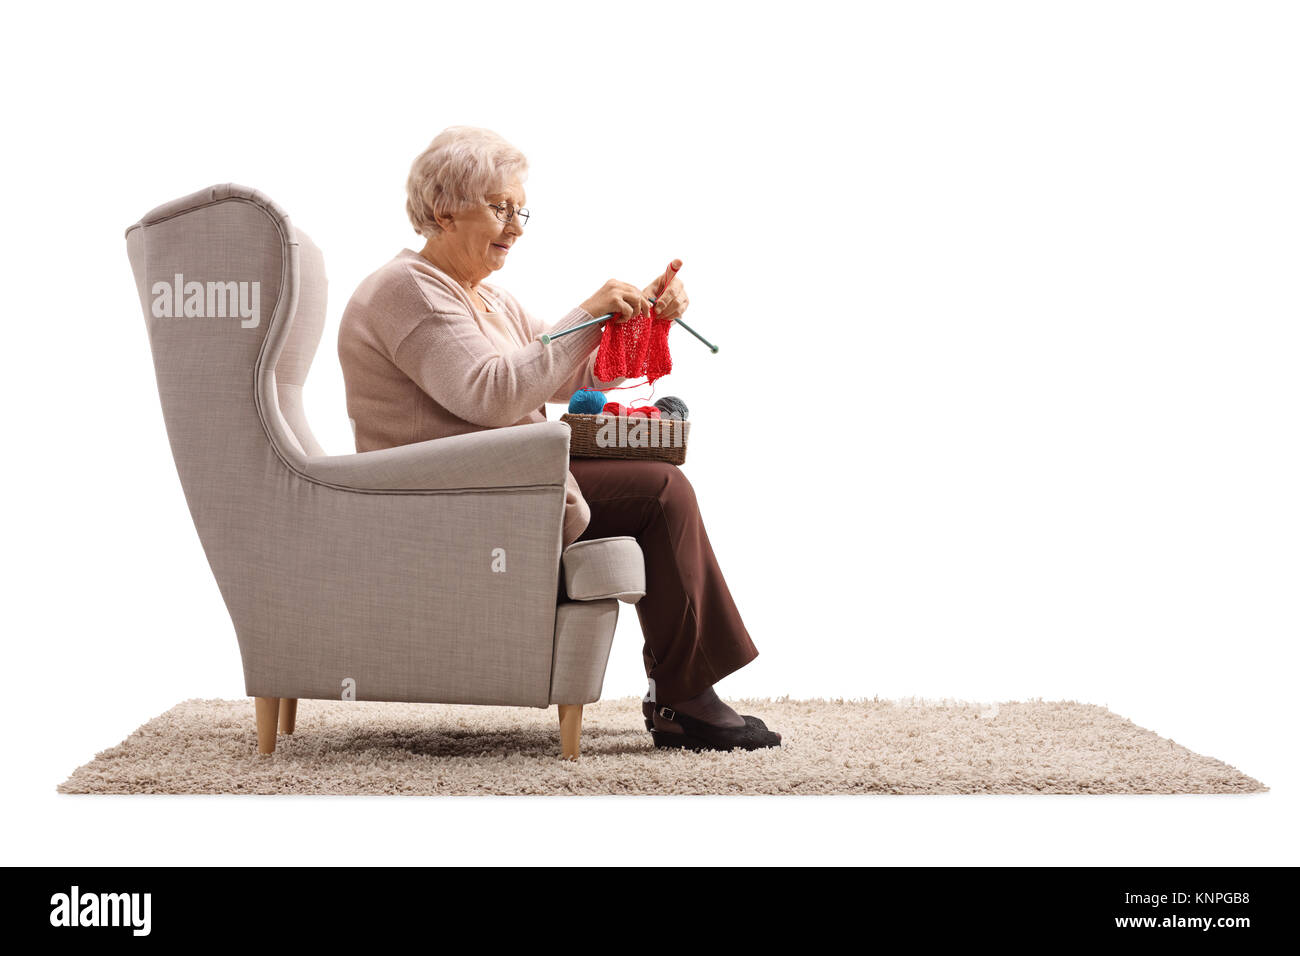 La haute dame assise dans un fauteuil et de tricot isolé sur fond blanc Banque D'Images